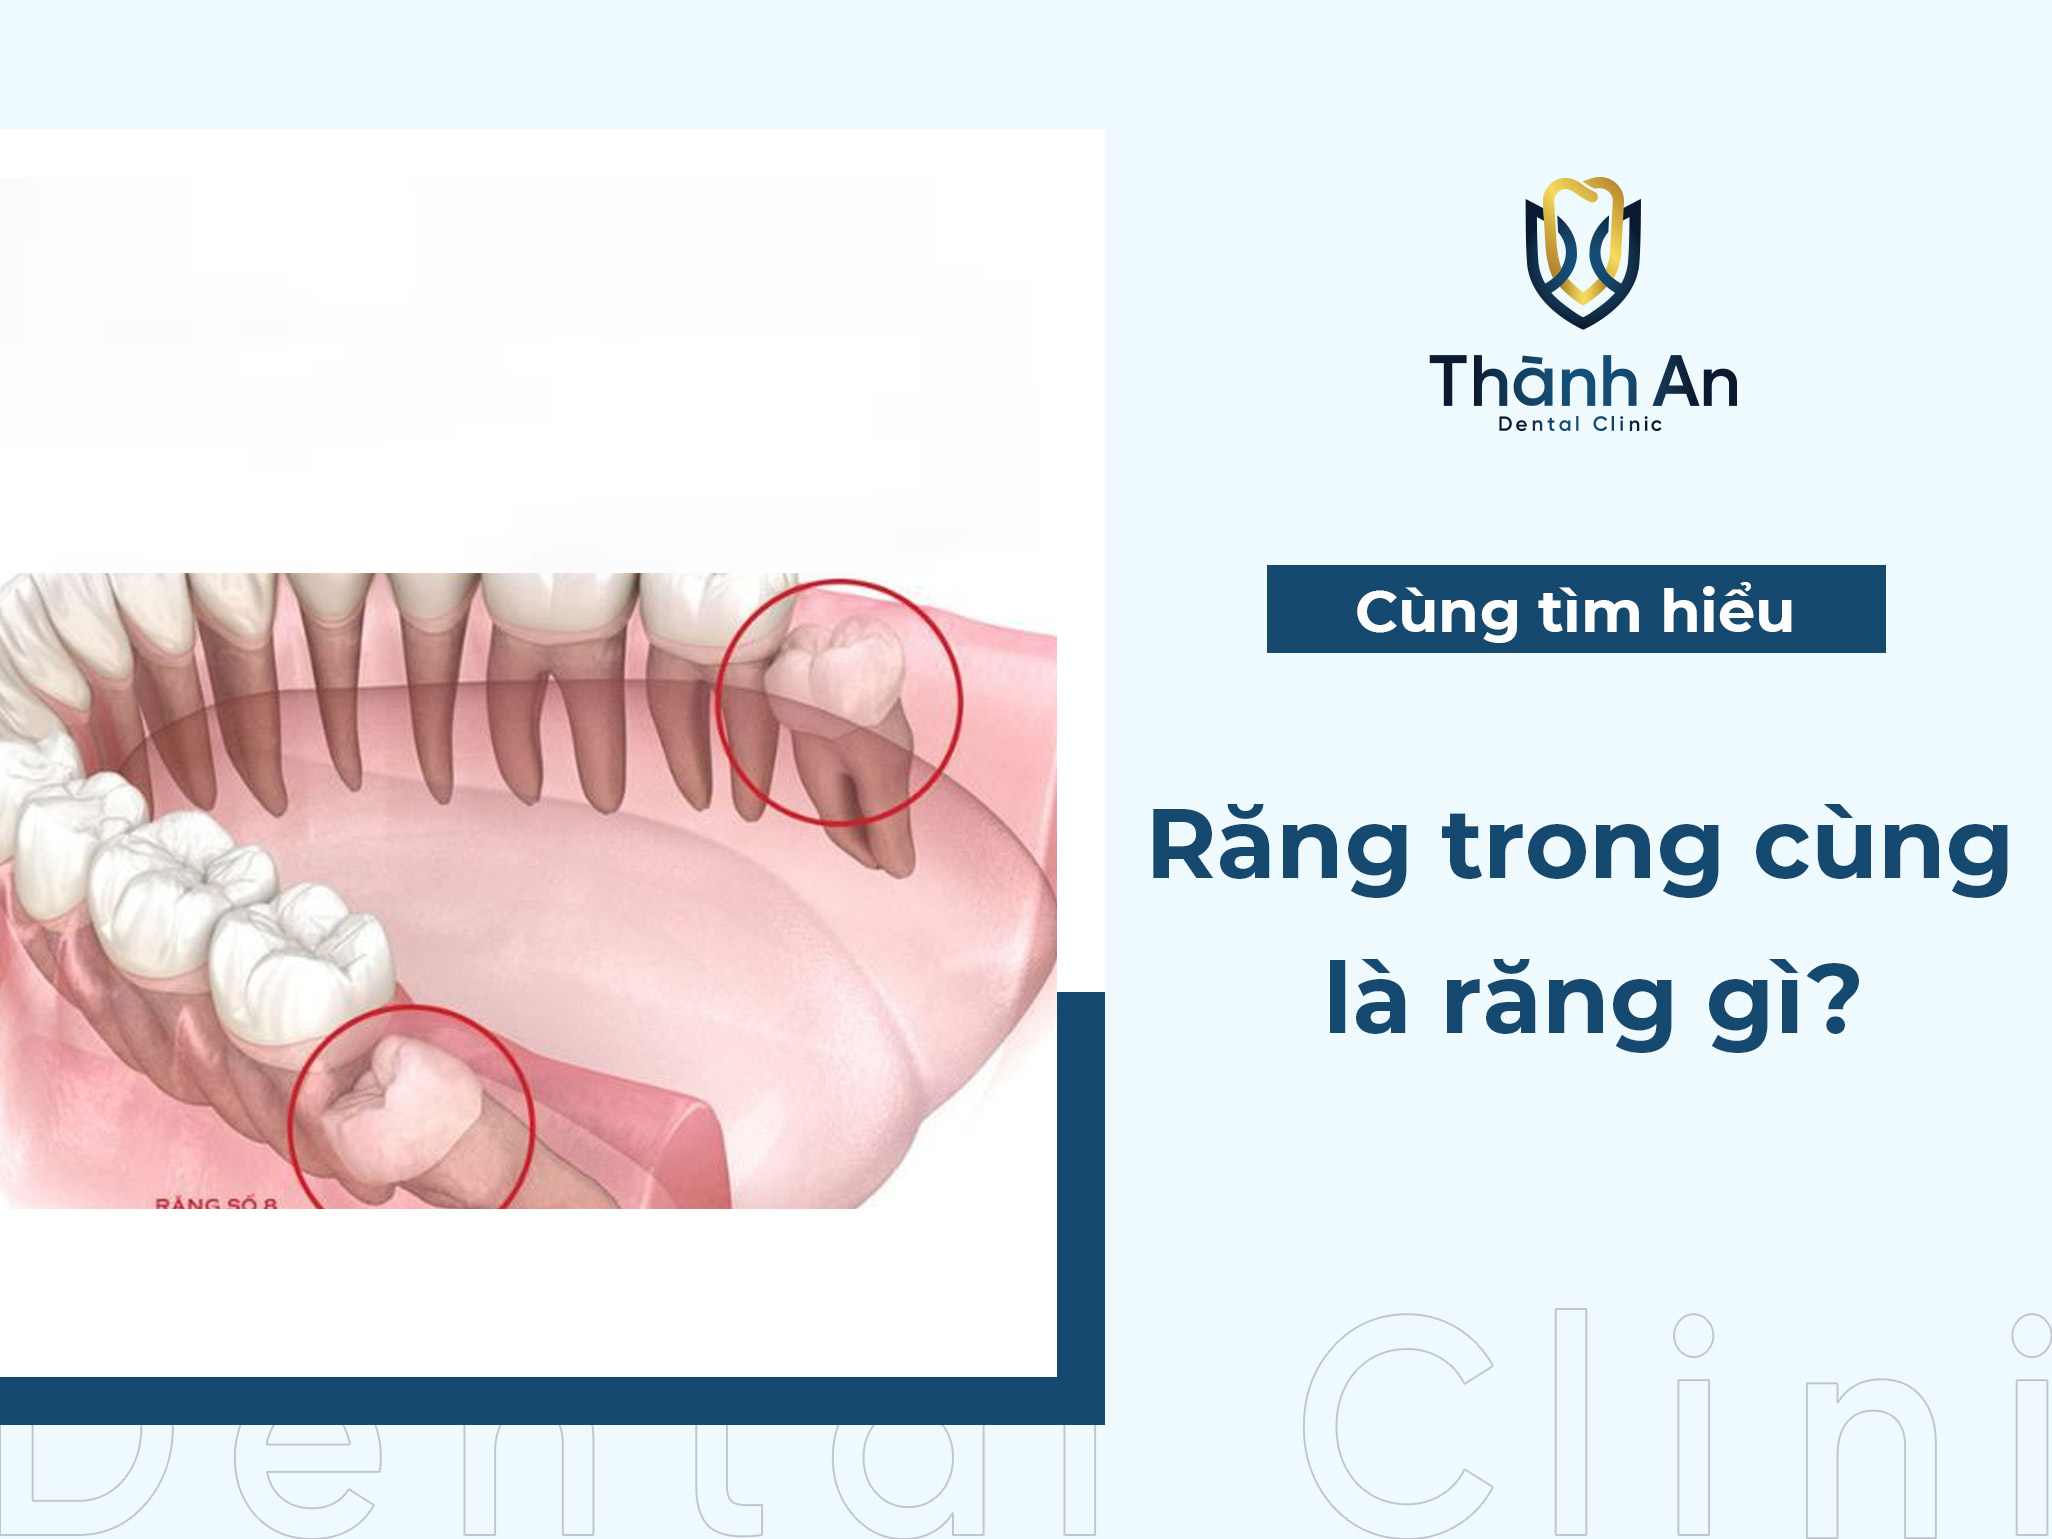 Răng trong cùng là răng gì? Có nên nhổ răng này hay không